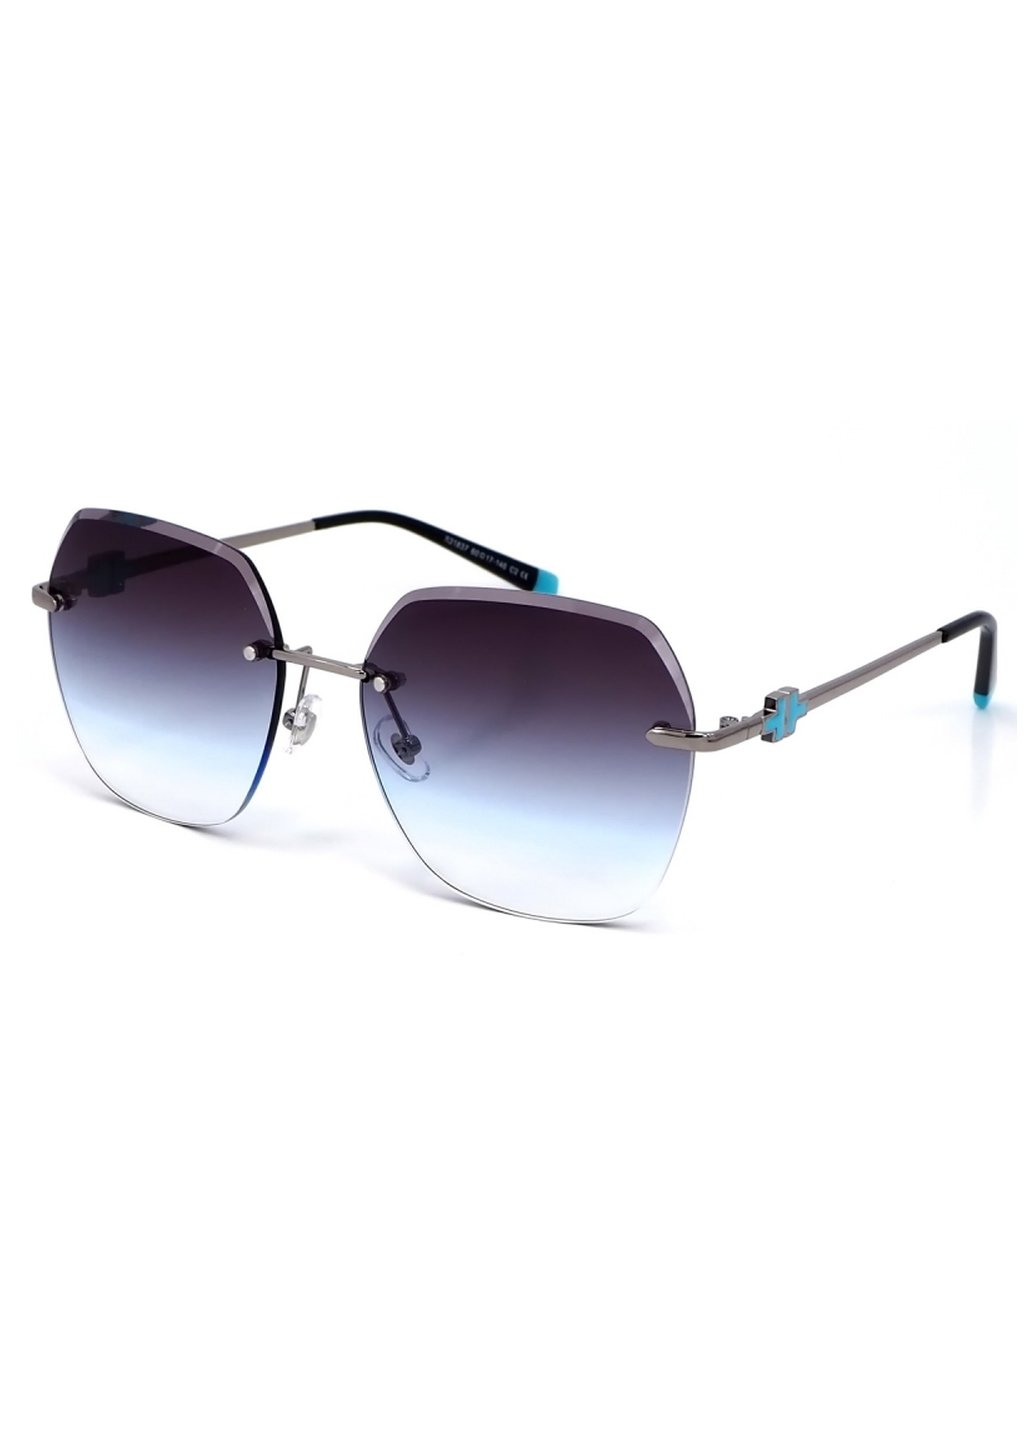 Купить Женские солнцезащитные очки Merlini с поляризацией S31837 117098 - Серый в интернет-магазине